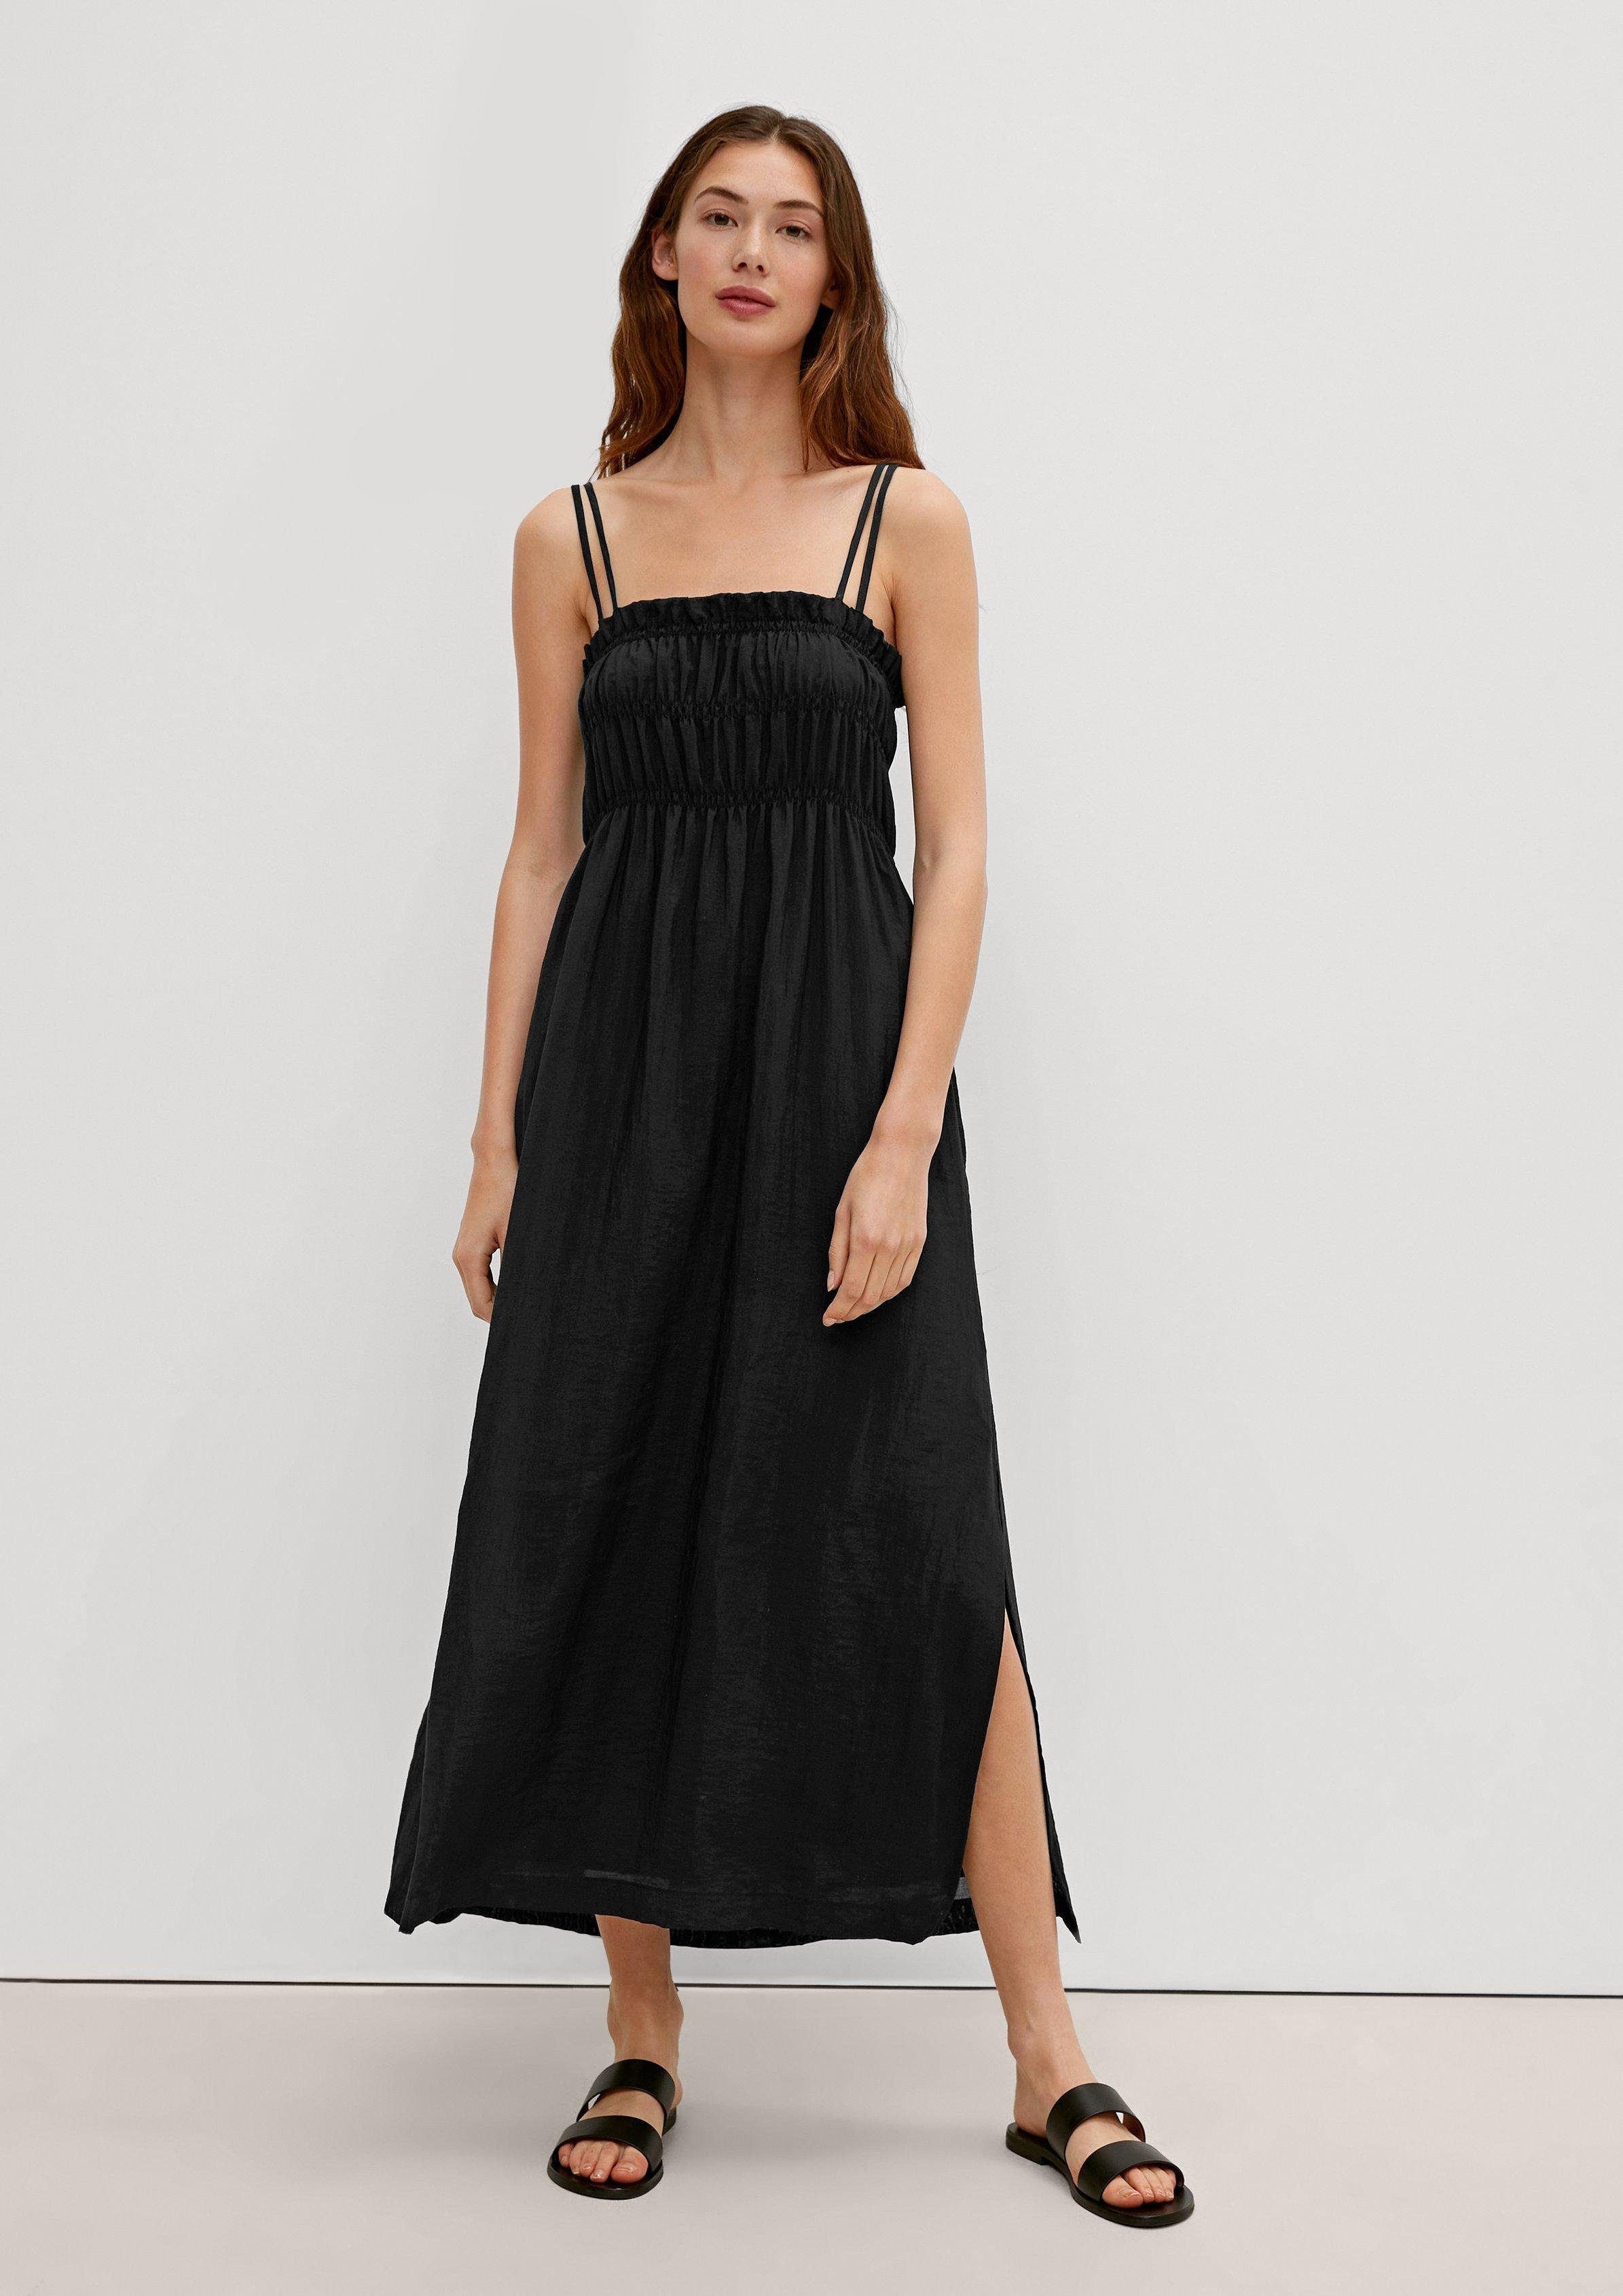 Comma Maxikleid Midi-Kleid mit Rüschendetail Raffung, Rüschen black